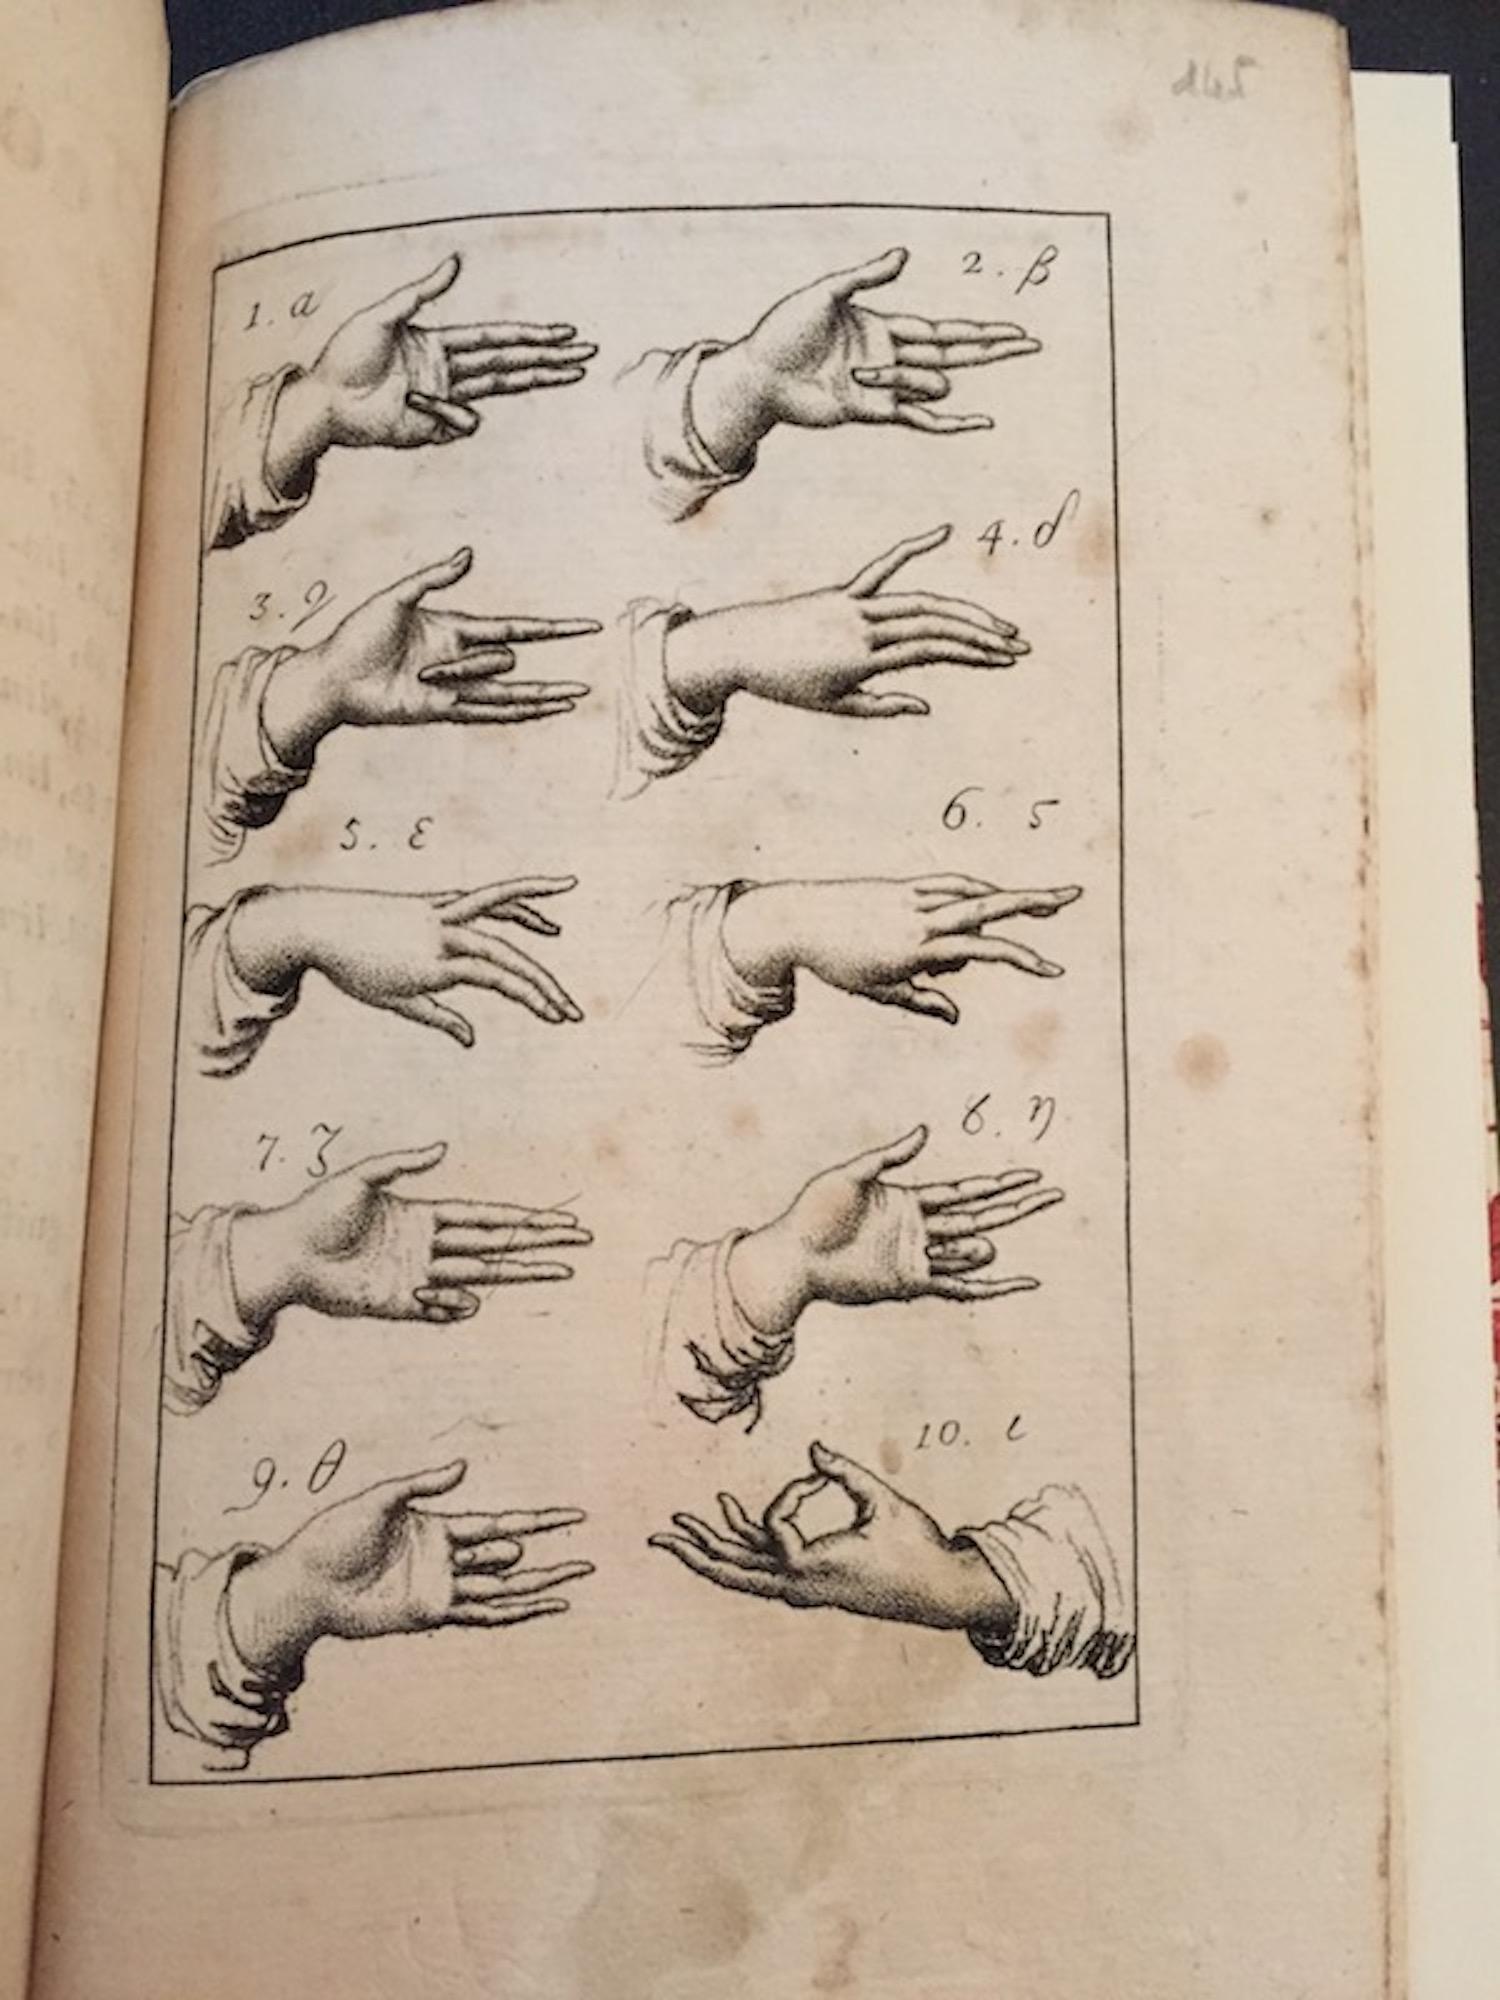 Erste Ausgabe dieses seltenen und wichtigen Werkes des spanischen Abtes Vincente Requeno (1743-1811) über die Bedeutung von Handzeichen und Positionen in der Kommunikation.

Dedic der Herausgeber an den 